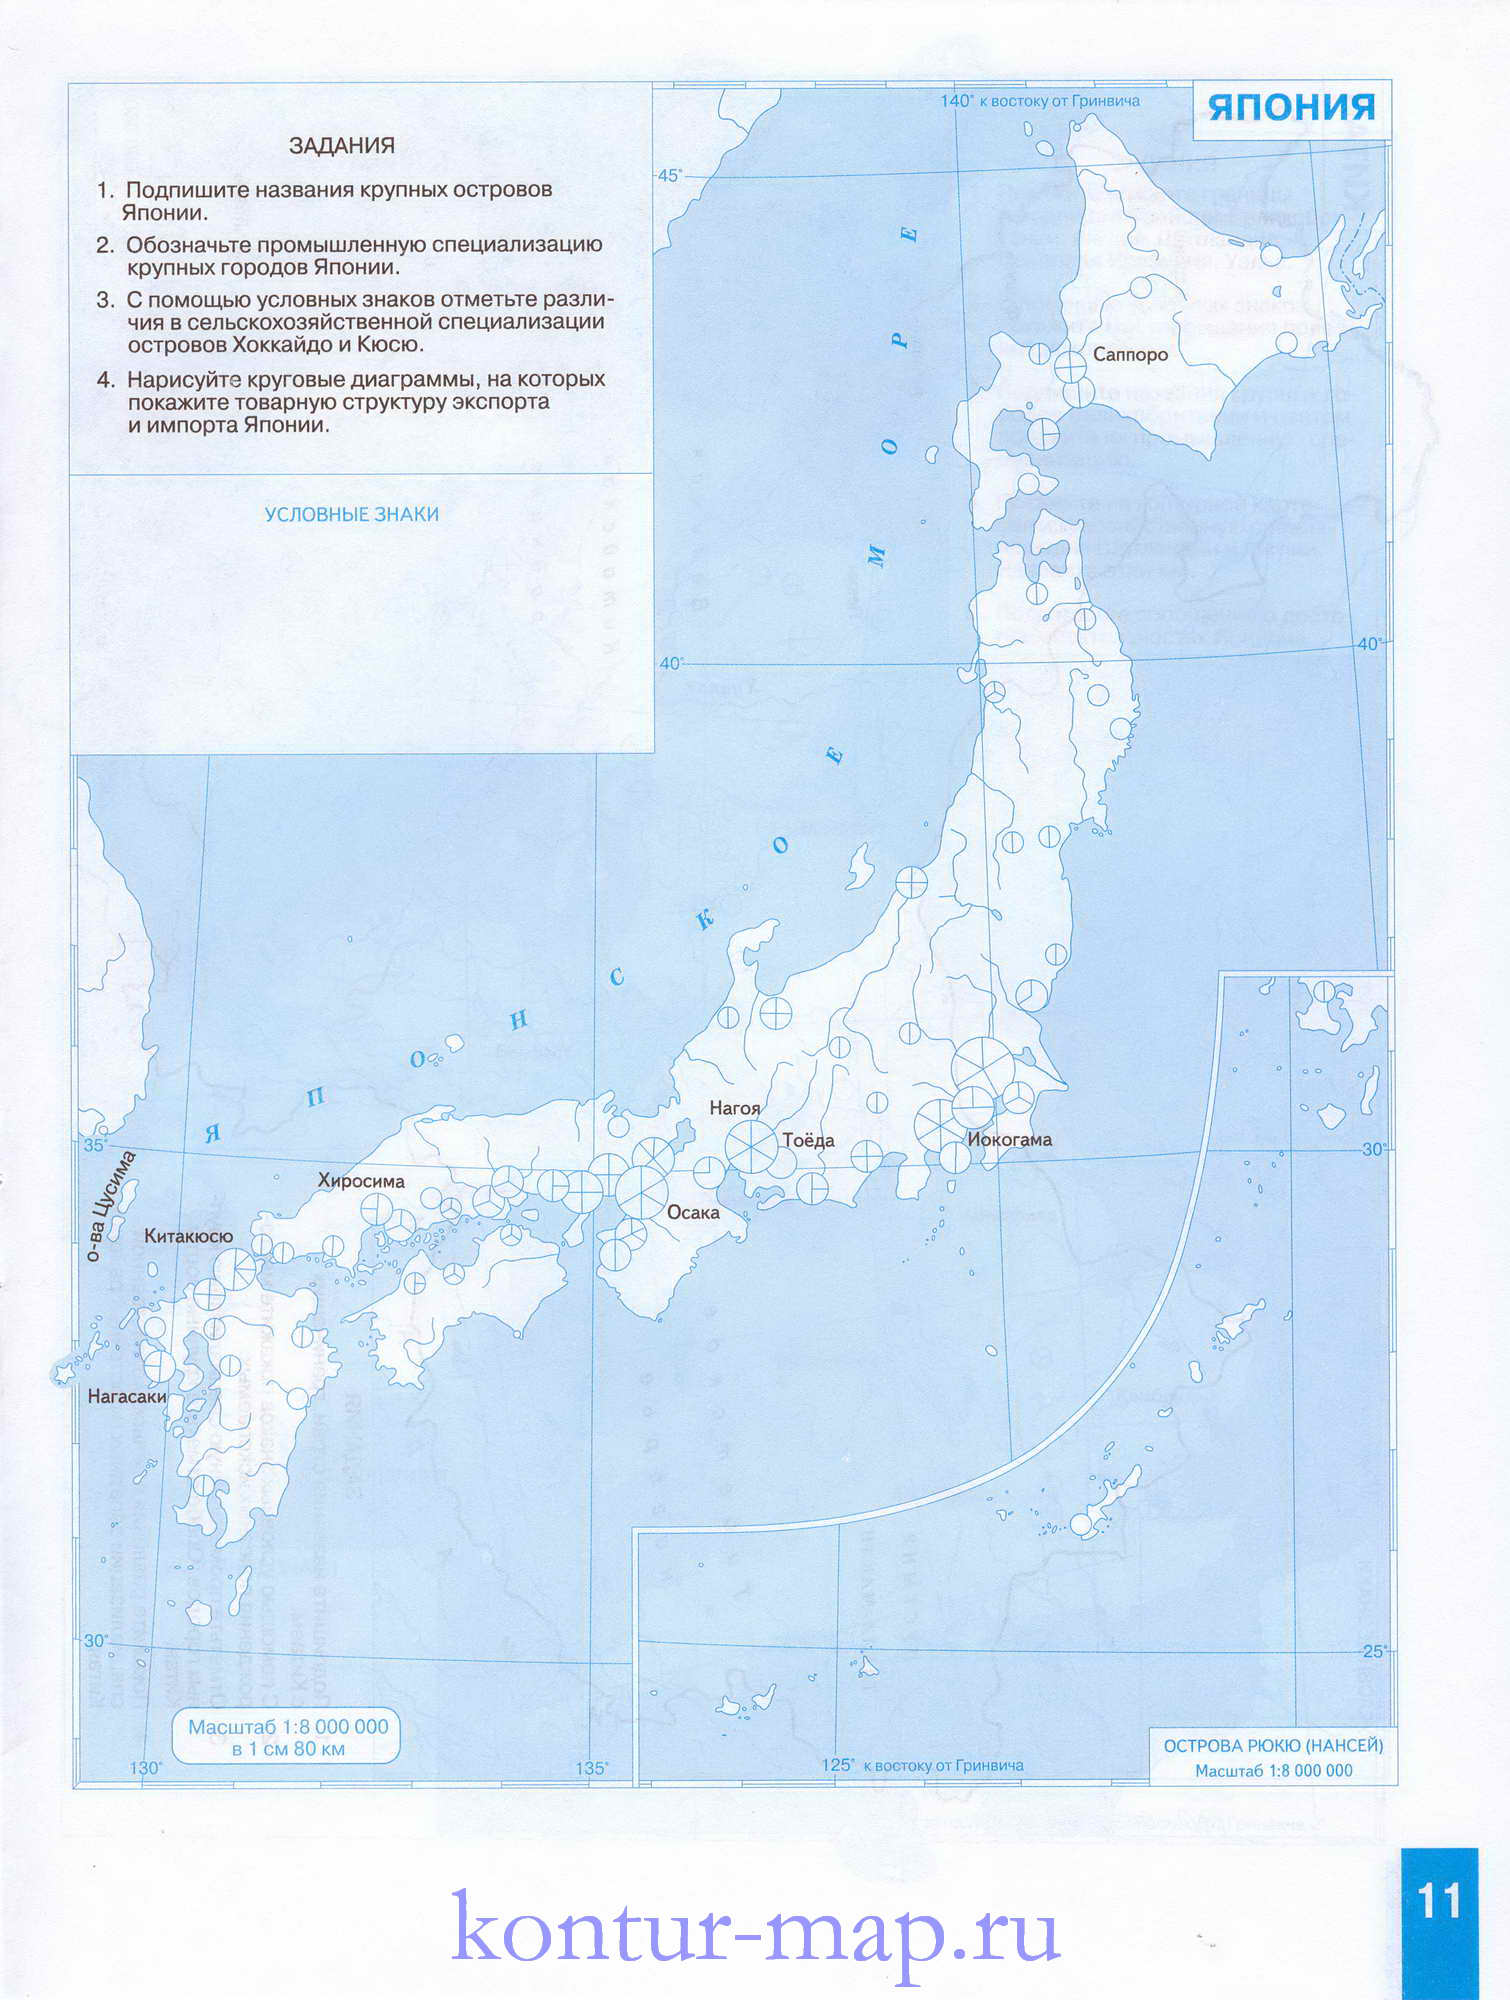 Контурная карта Японии с заданиями. Контурная карта Японии - география для 10 класса, A0 - 